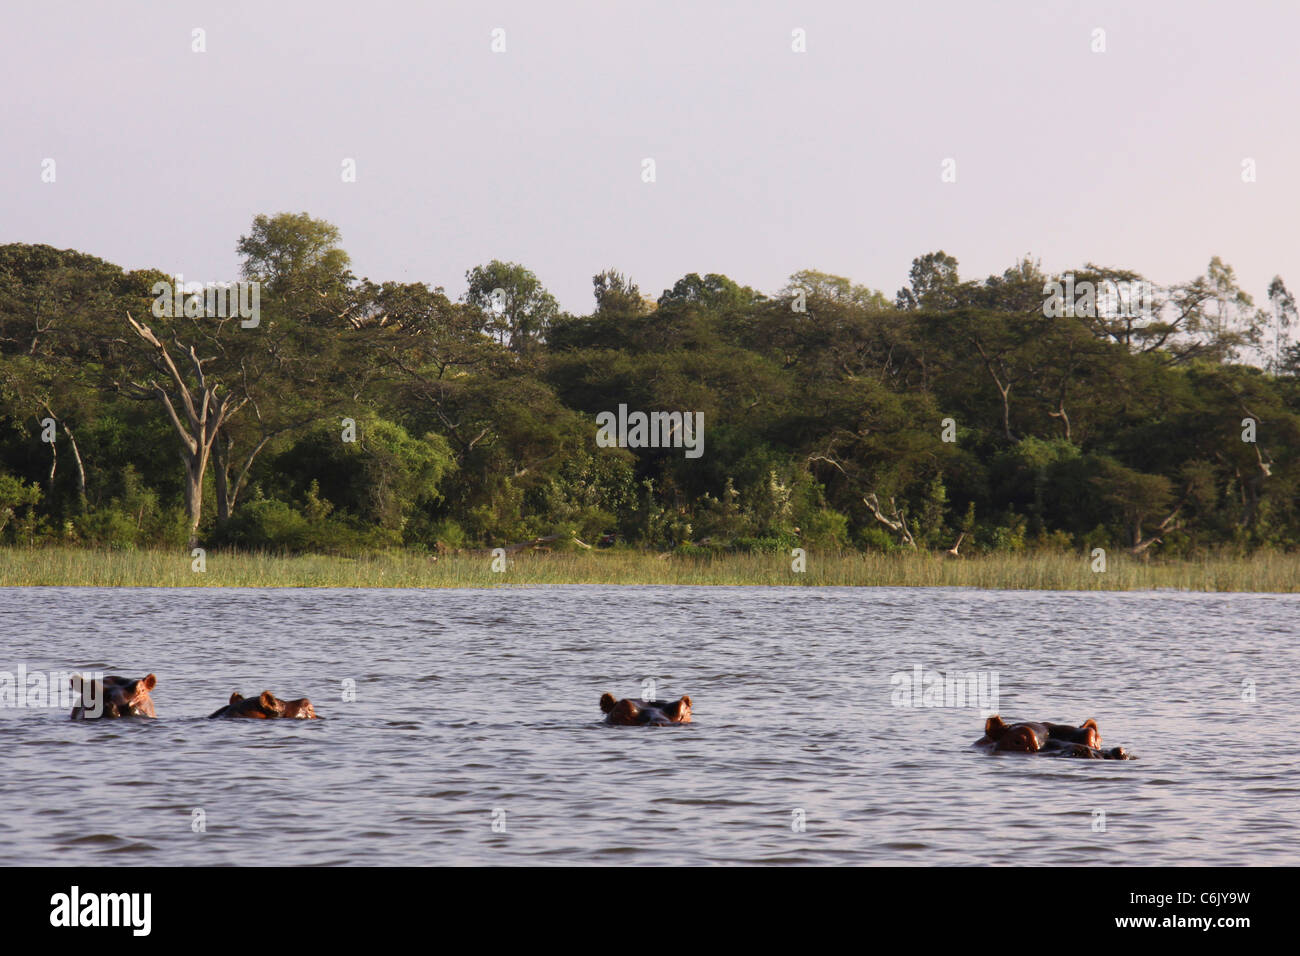 Quattro ippopotami (Hippopotamus amphibius) immerso in acqua con solo gli occhi e le orecchie visibili. Foto Stock